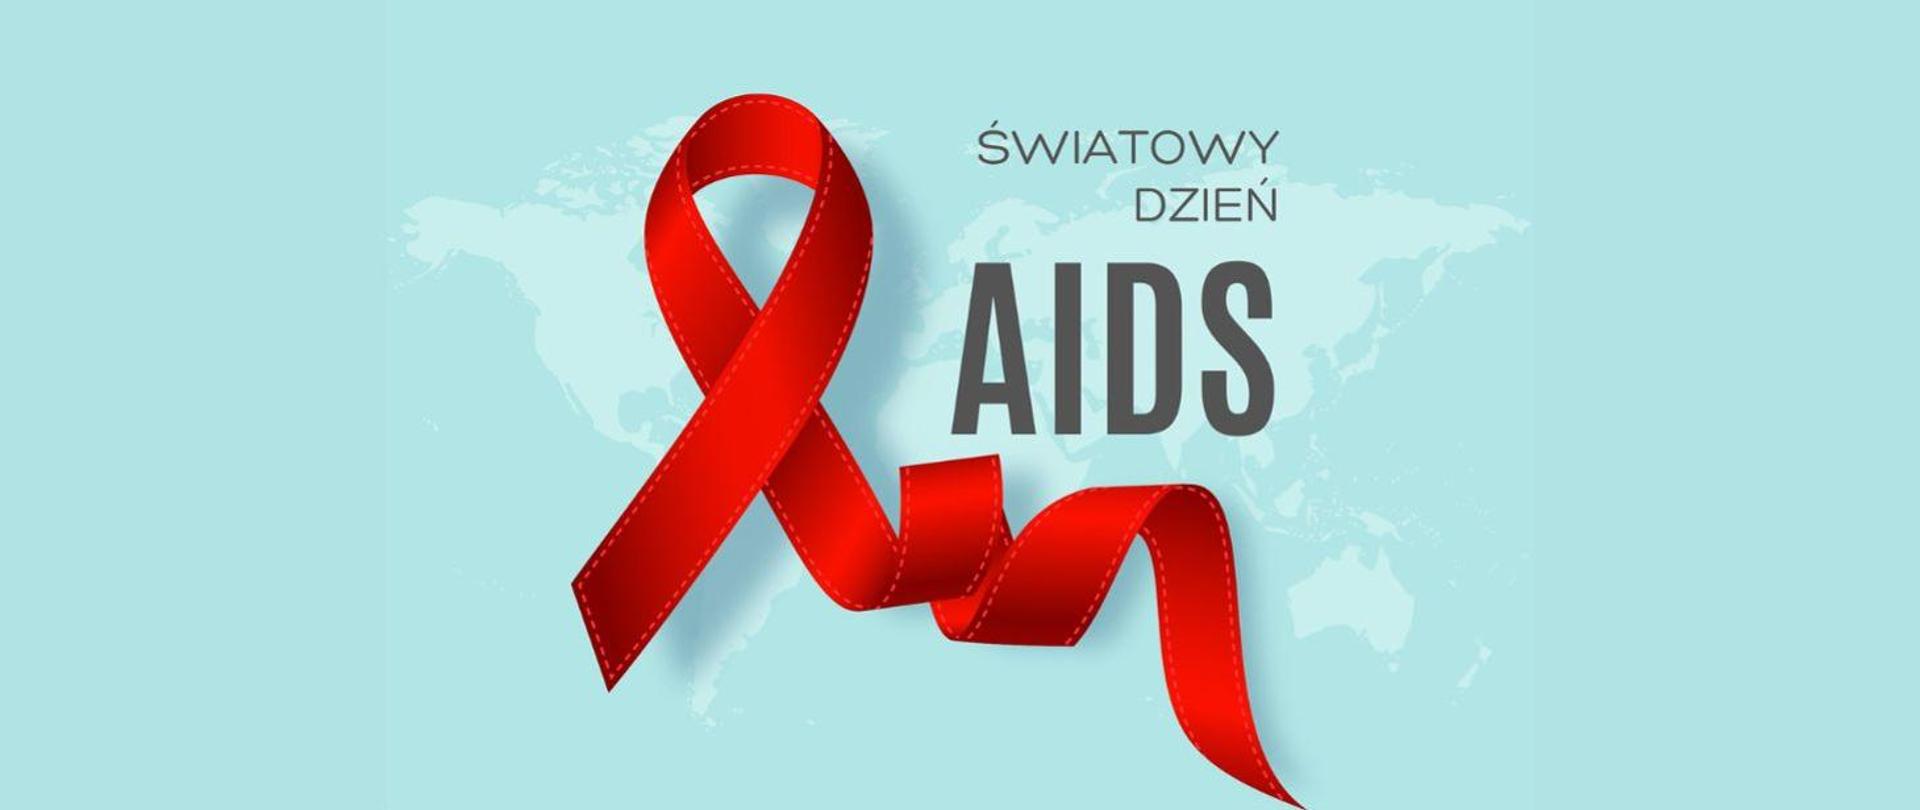 Napis Światowy Dzień AIDS. Czerwona wstążeczka na błękitnym tle. W tle mapa świata.